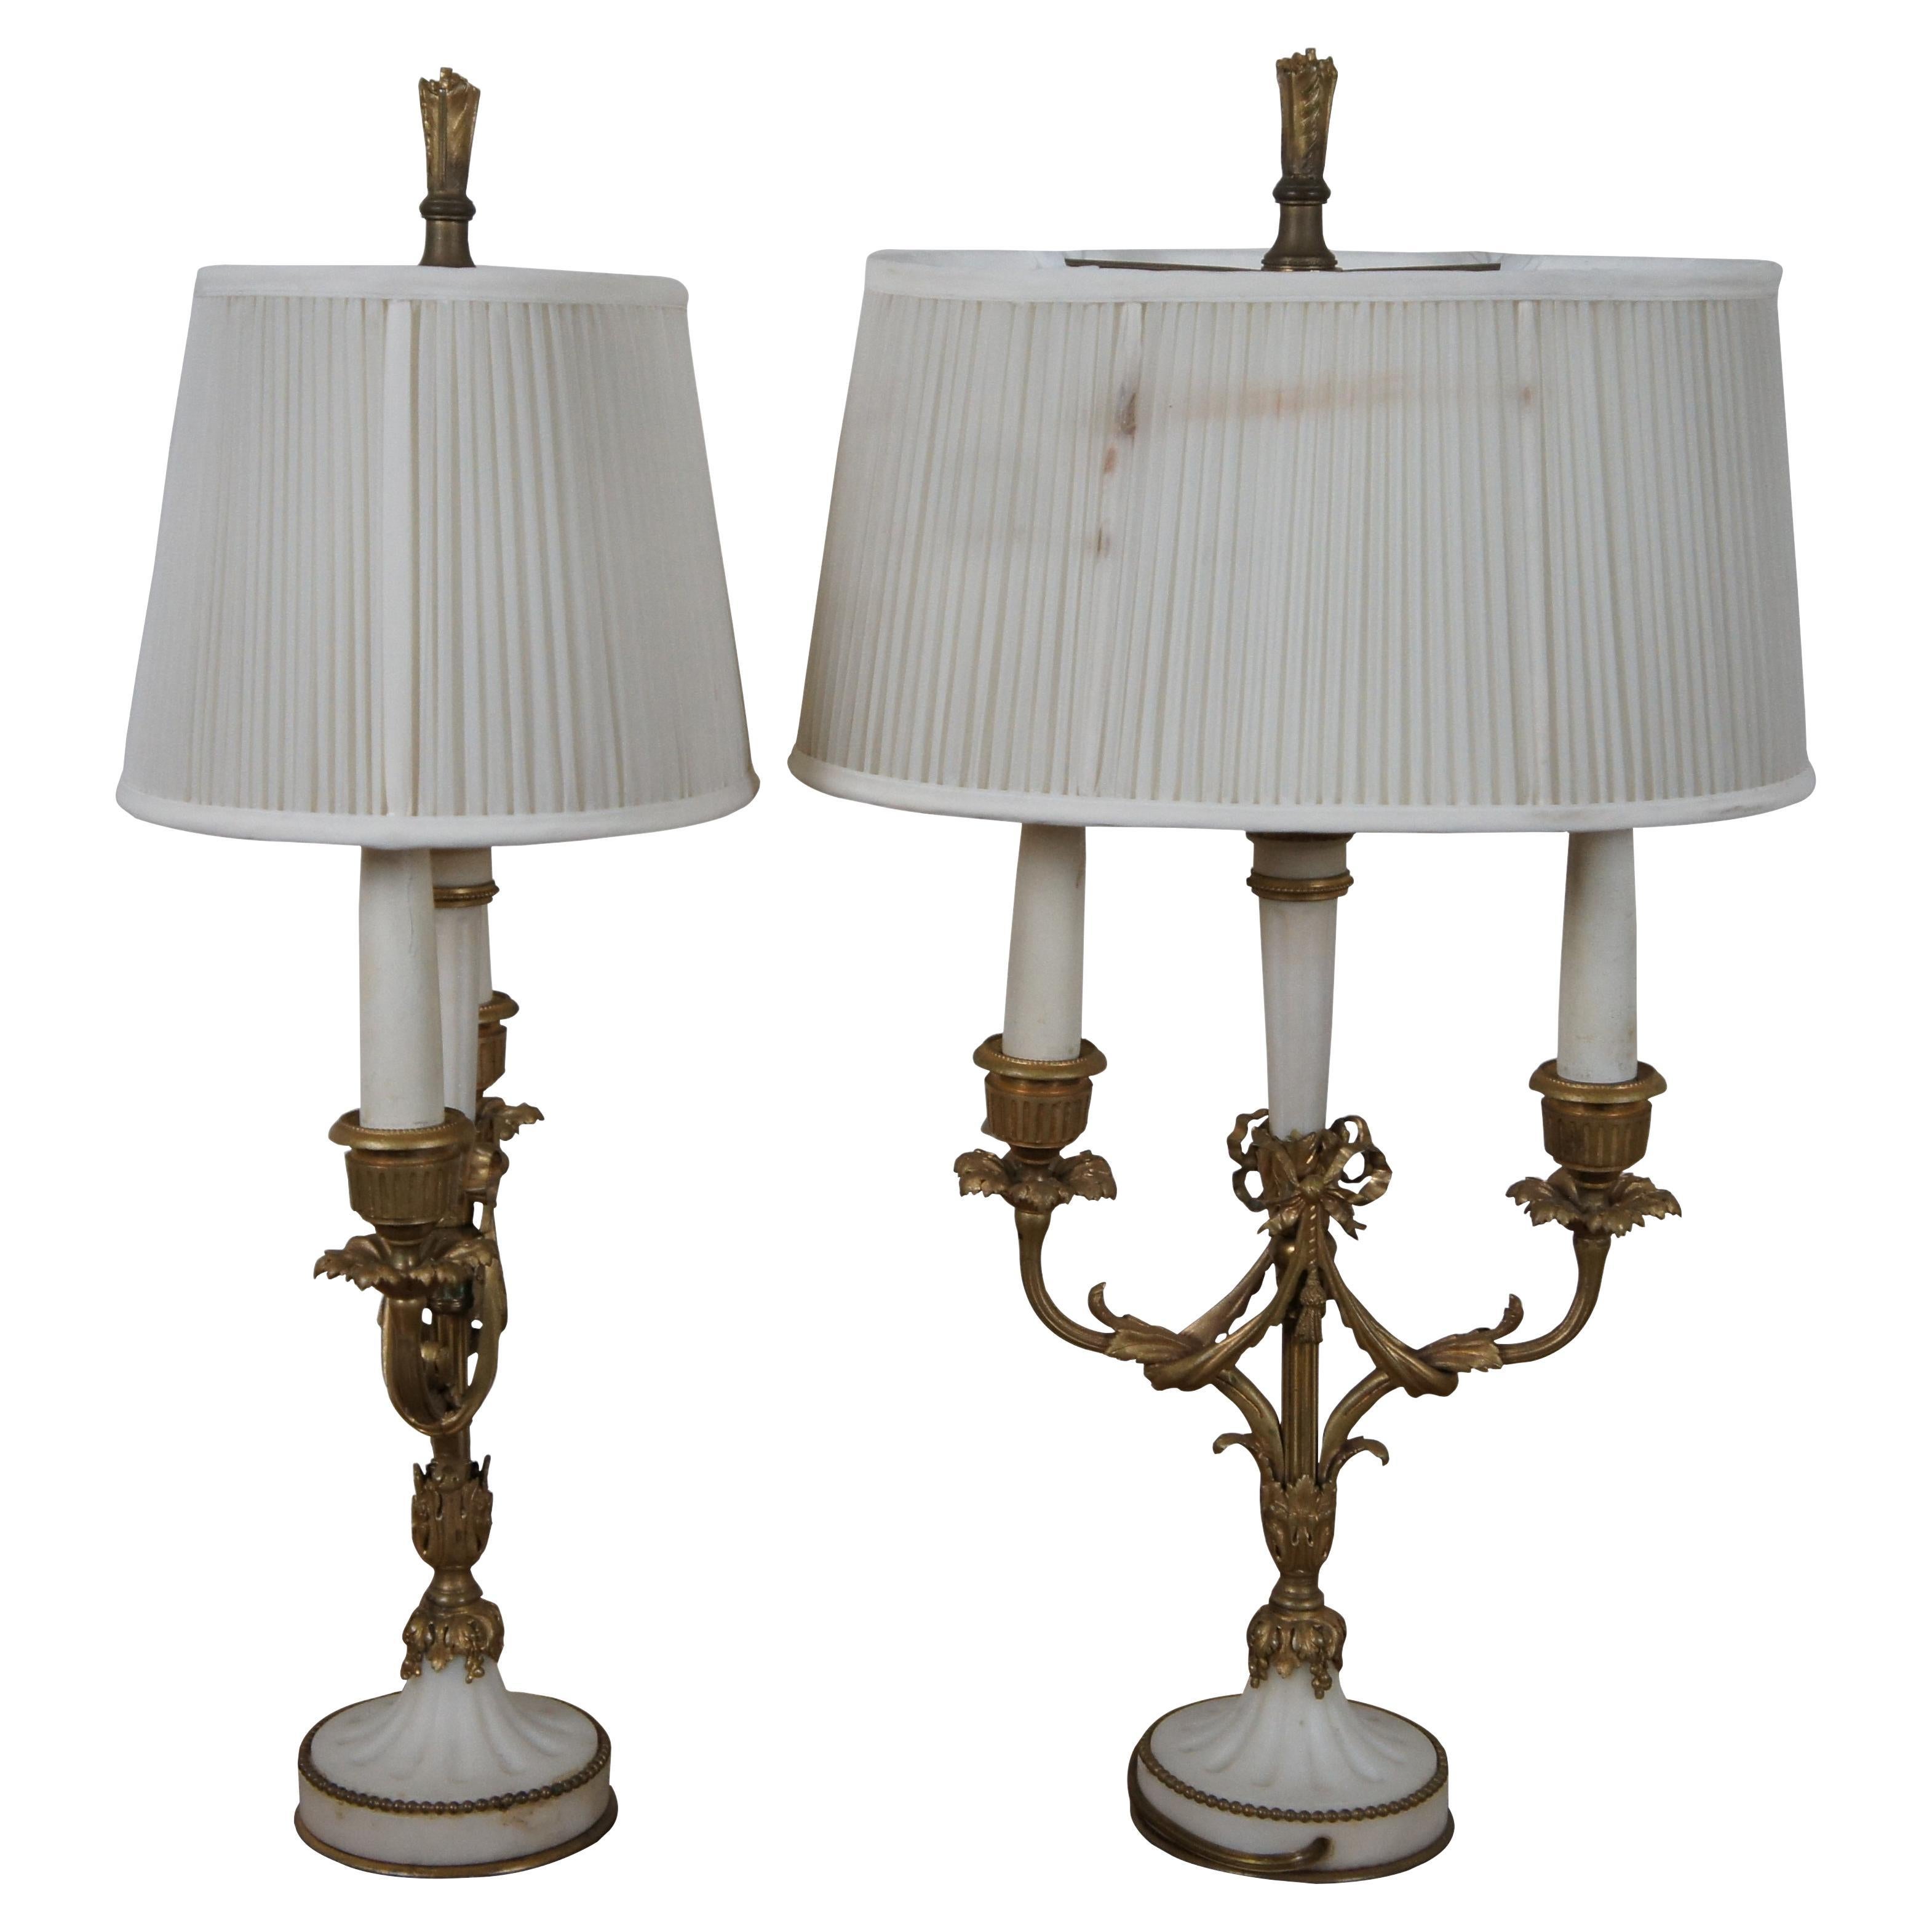 Zwei antike französische Bouillotte-Tischlampen im neoklassizistischen Stil mit Akzenten aus weißem Alabaster und aufwändigem, kanneliertem Design aus vergoldeter Bronze. Der Korpus und die Arme sind mit einem Blumen- und Bandmotiv in Akanthusform